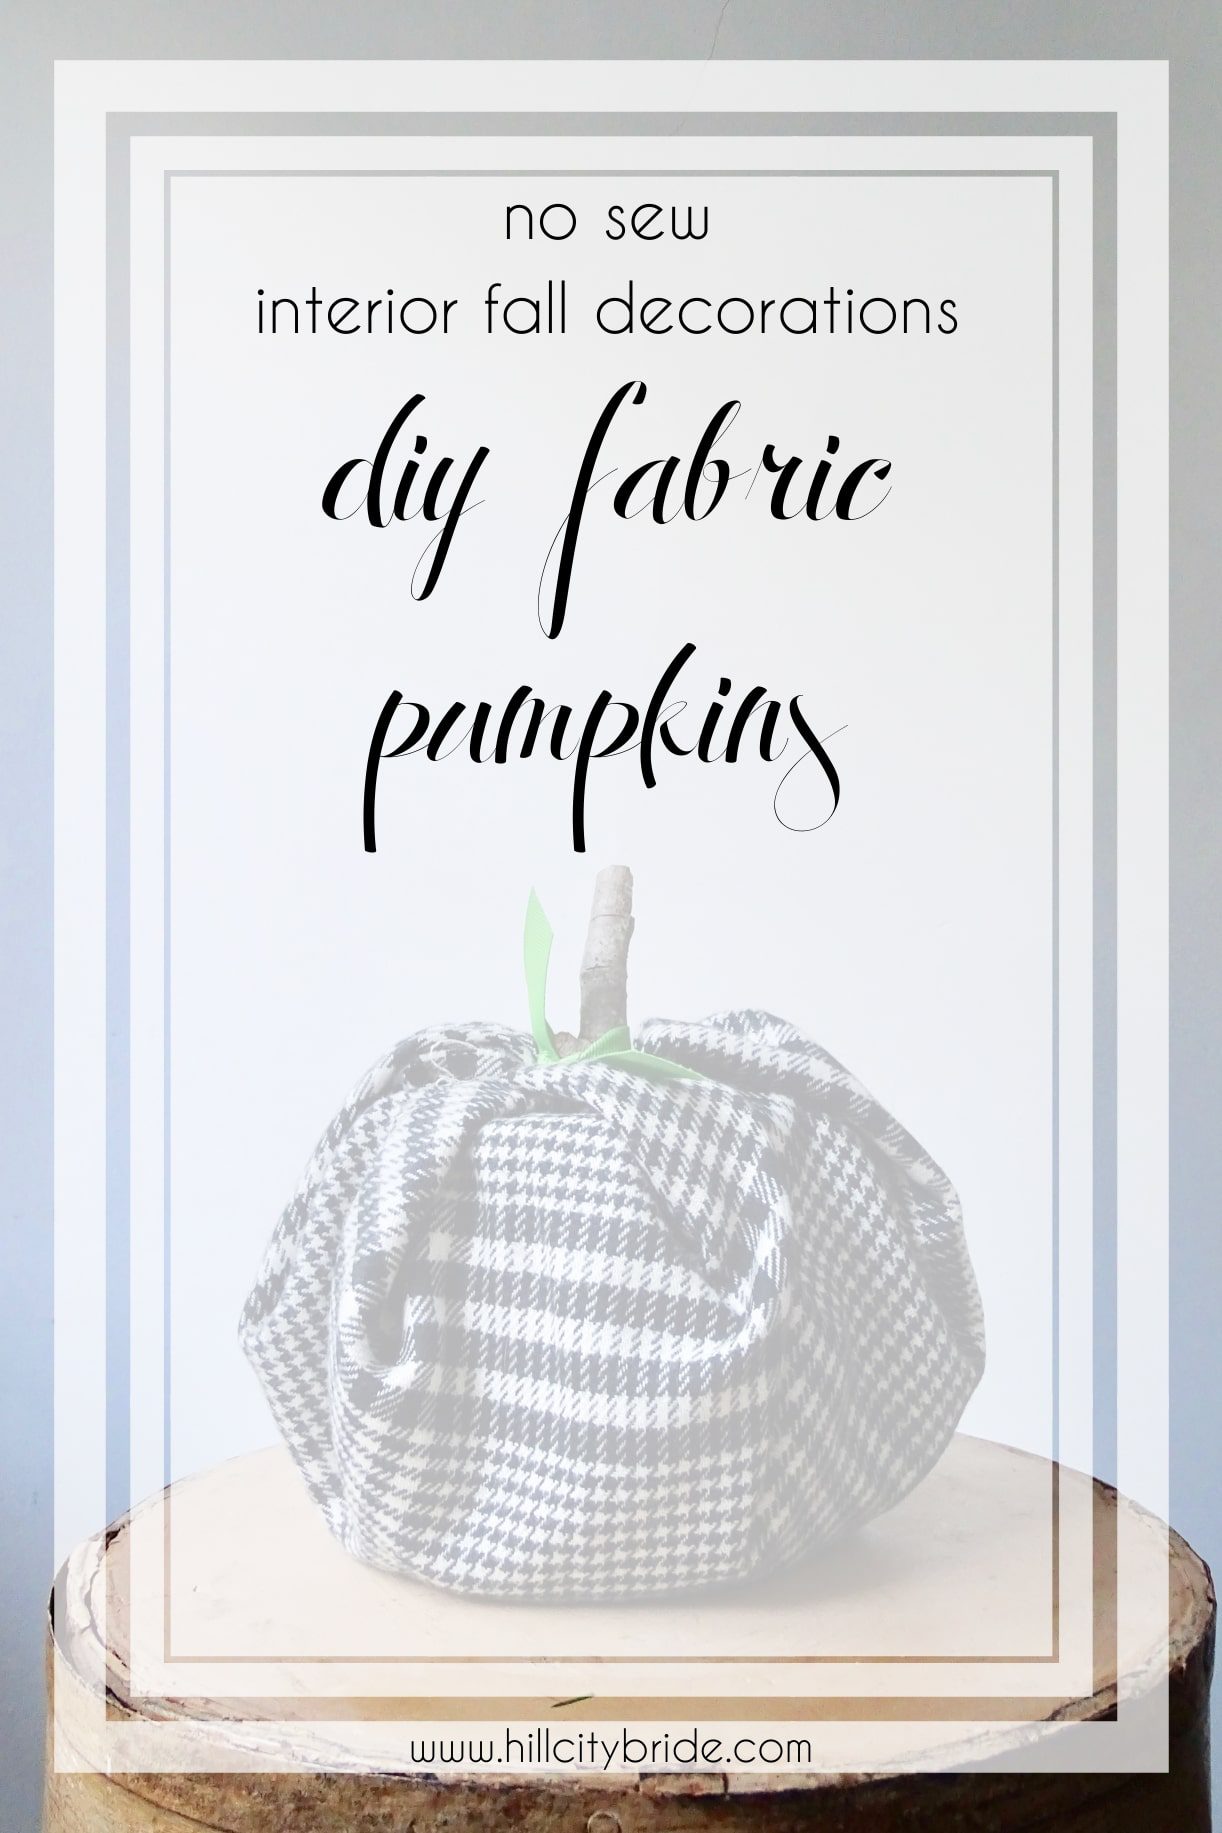 DIY Fabric Pumpkins No Sew Interior Fall Decorations | Hill City Bride Virgiina Weddings